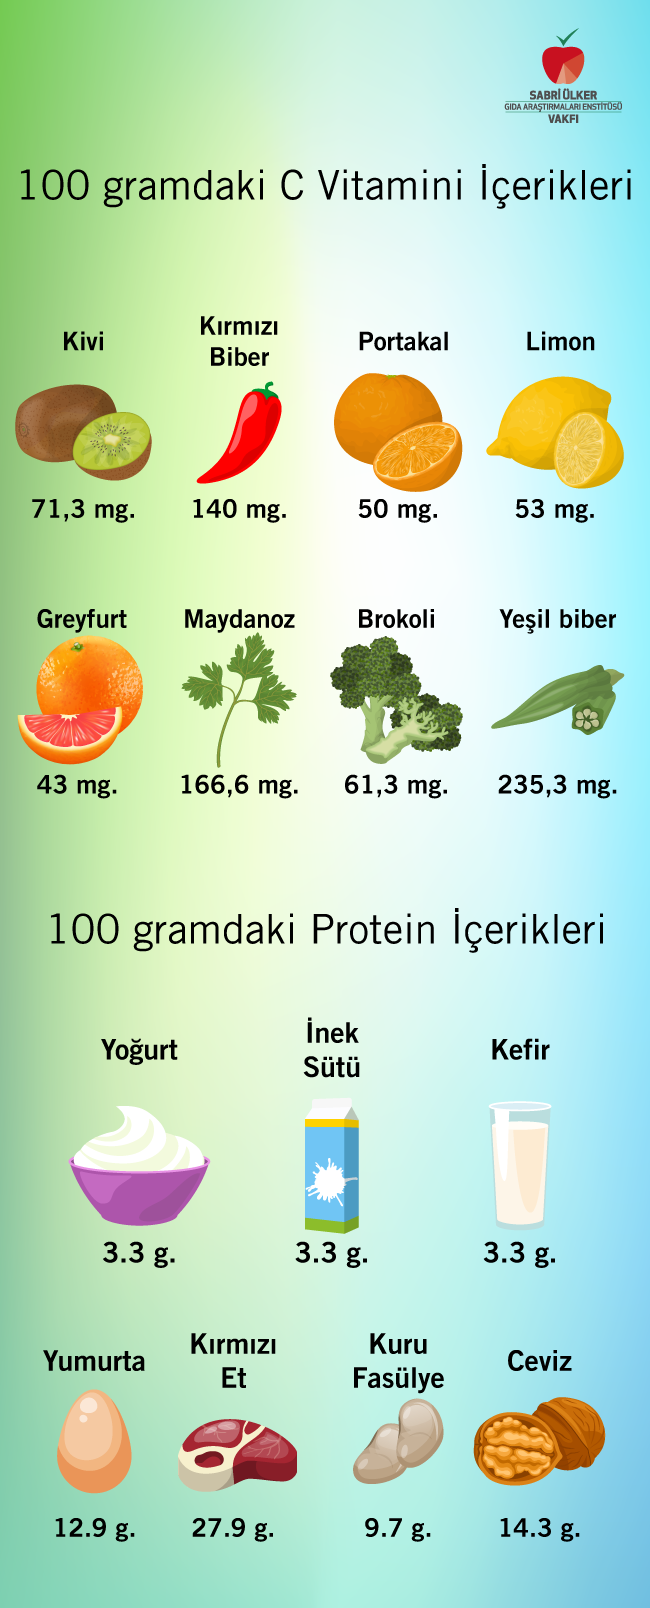 100 gramdaki C vitamin içerikleri